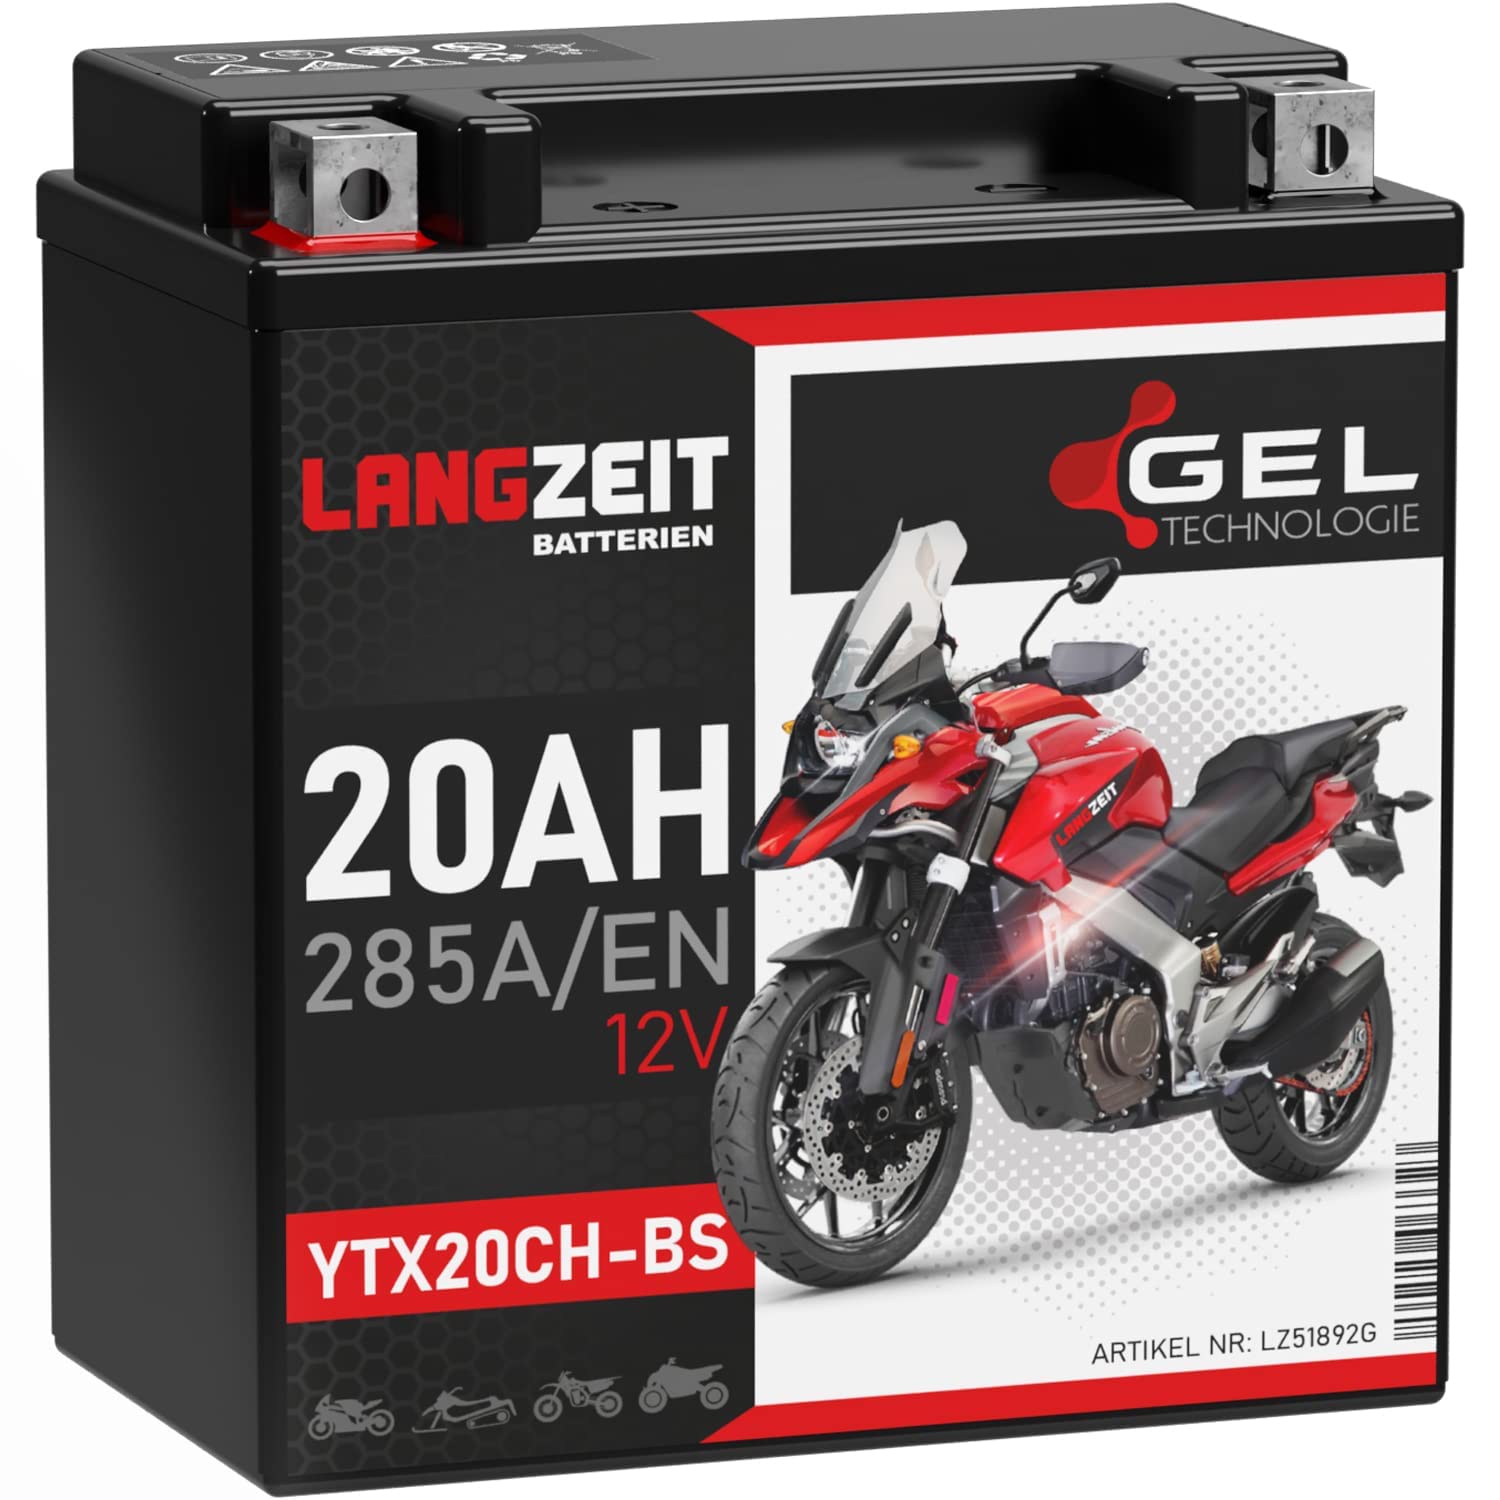 LANGZEIT YTX20CH-BS GEL Motorradbatterie 12V 20Ah 285A/EN GEL Batterie 12V 51892 doppelte Lebensdauer vorgeladen auslaufsicher wartungsfrei von LANGZEIT Batterien